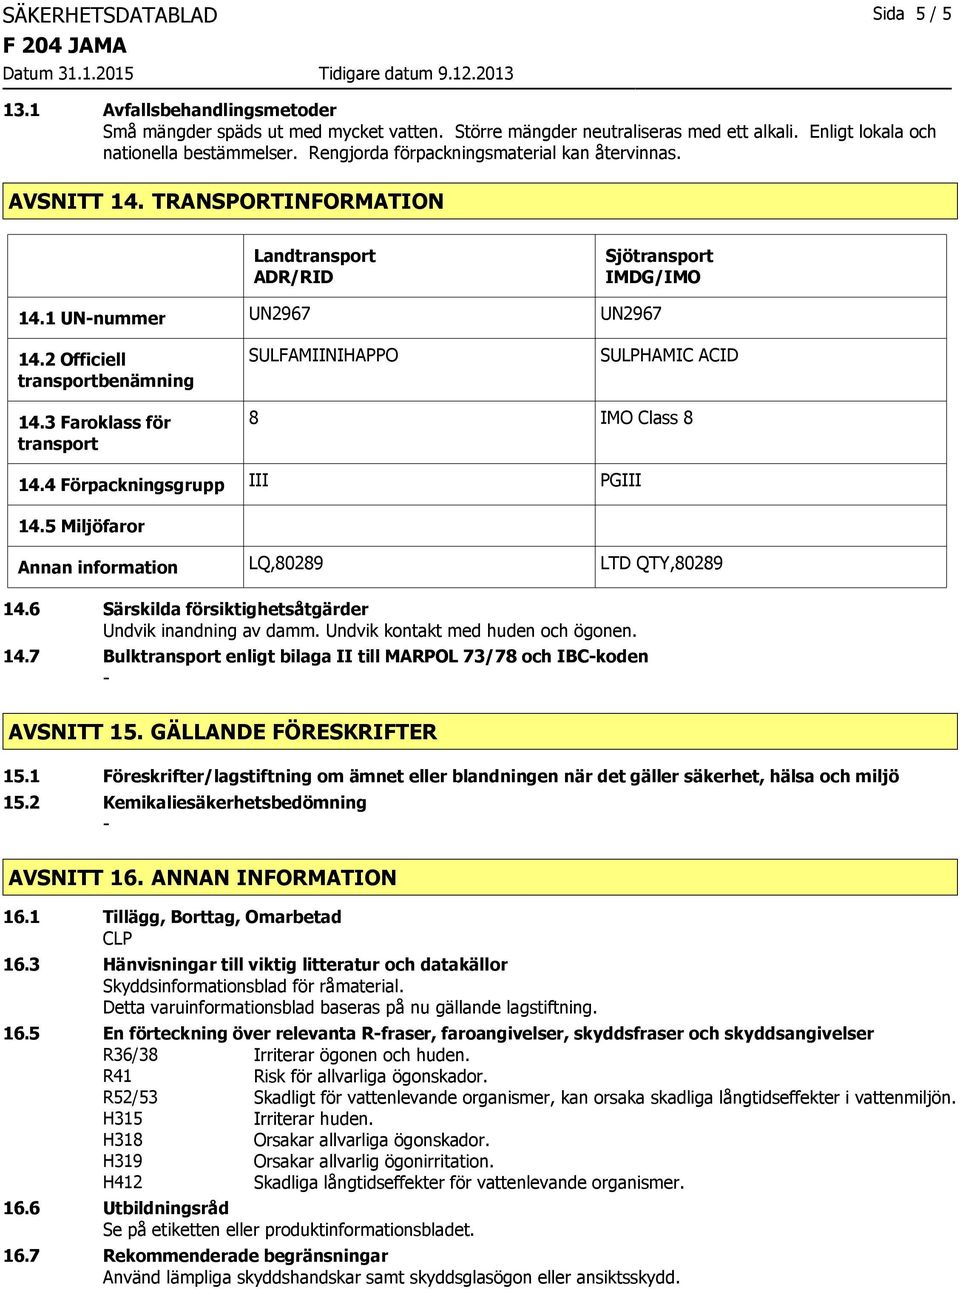 2 Officiell transportbenämning SULFAMIINIHAPPO SULPHAMIC ACID 14.3 Faroklass för transport 8 IMO Class 8 14.4 Förpackningsgrupp III PGIII 14.5 Miljöfaror Annan information LQ,80289 LTD QTY,80289 14.